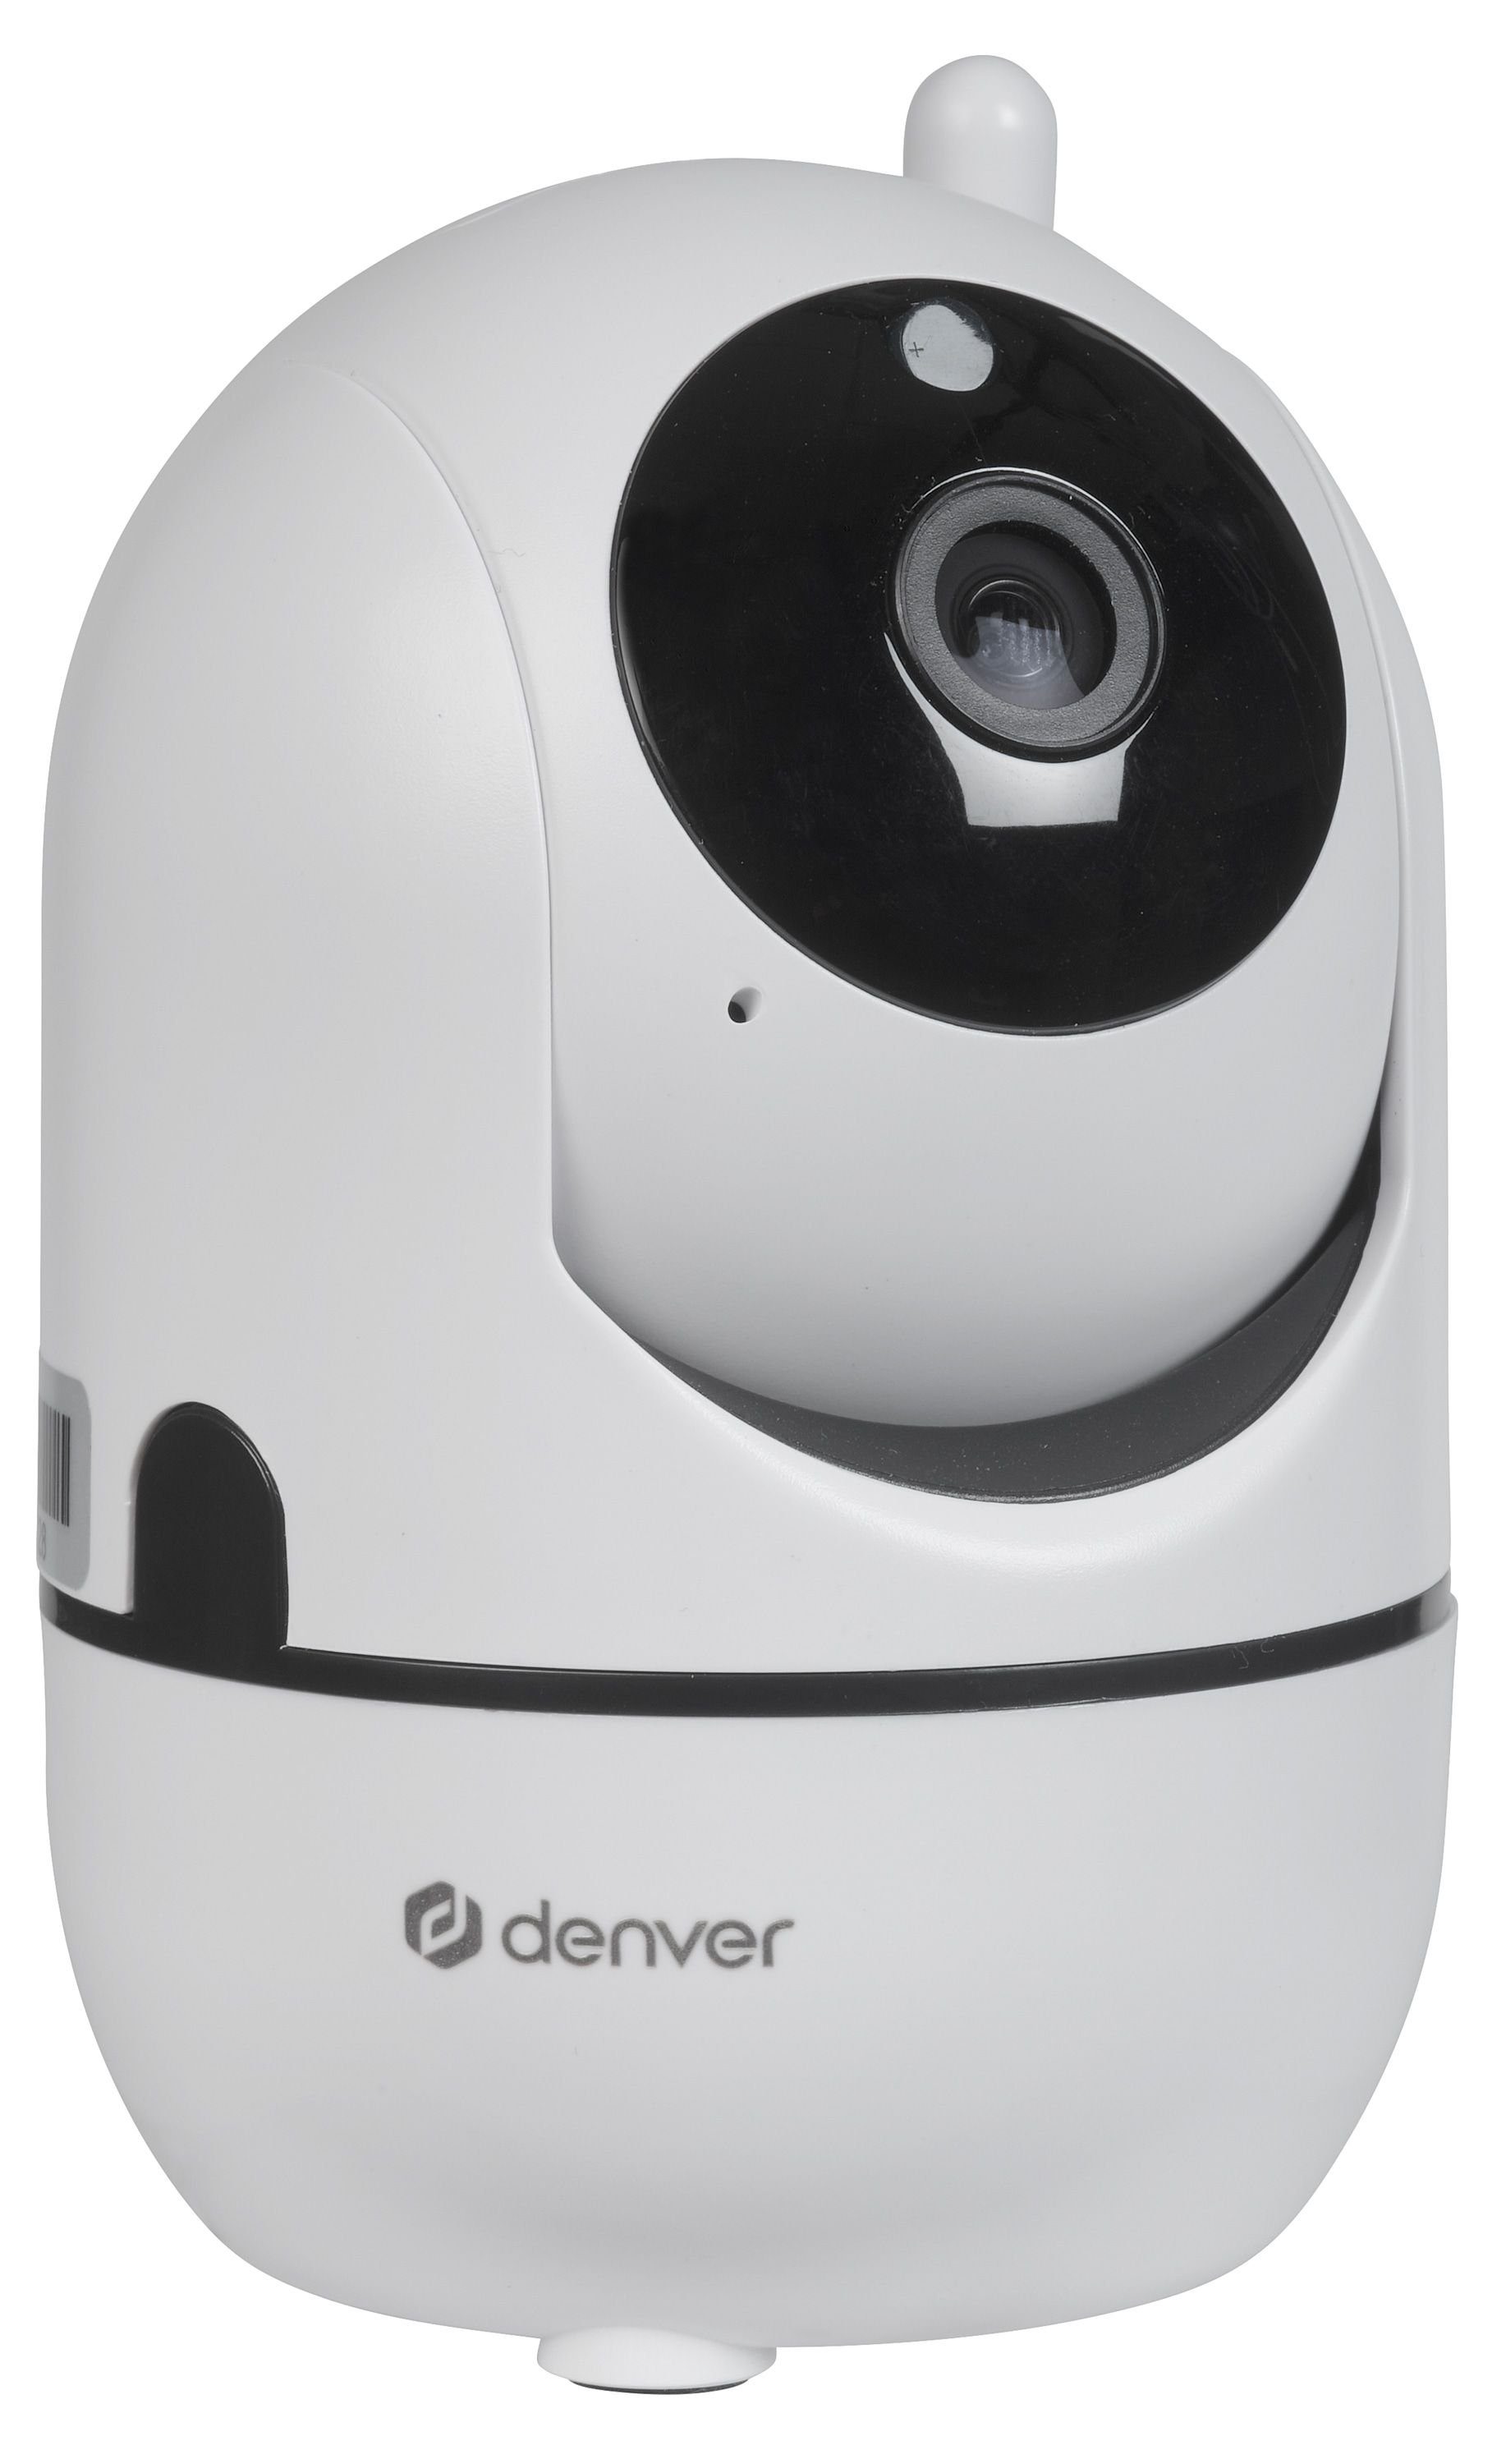 Denver DENVER Überwachungskamera IIC-172, innen, weiß Überwachungskamera